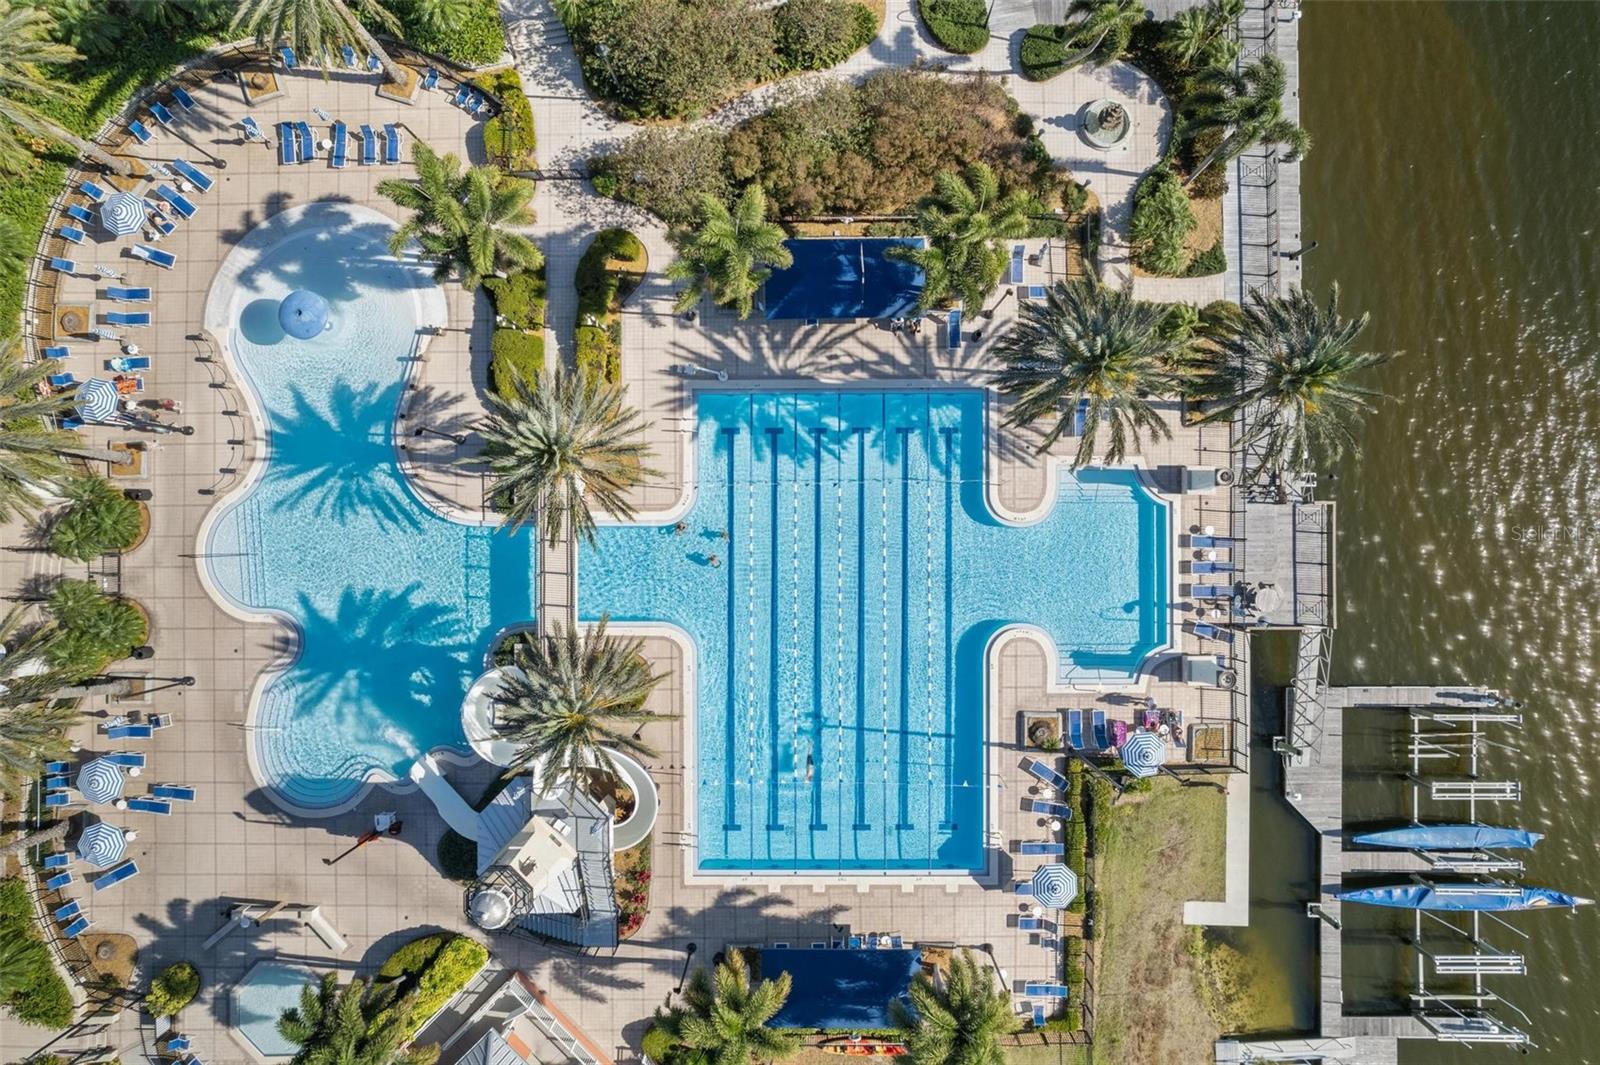 Main pool aerial